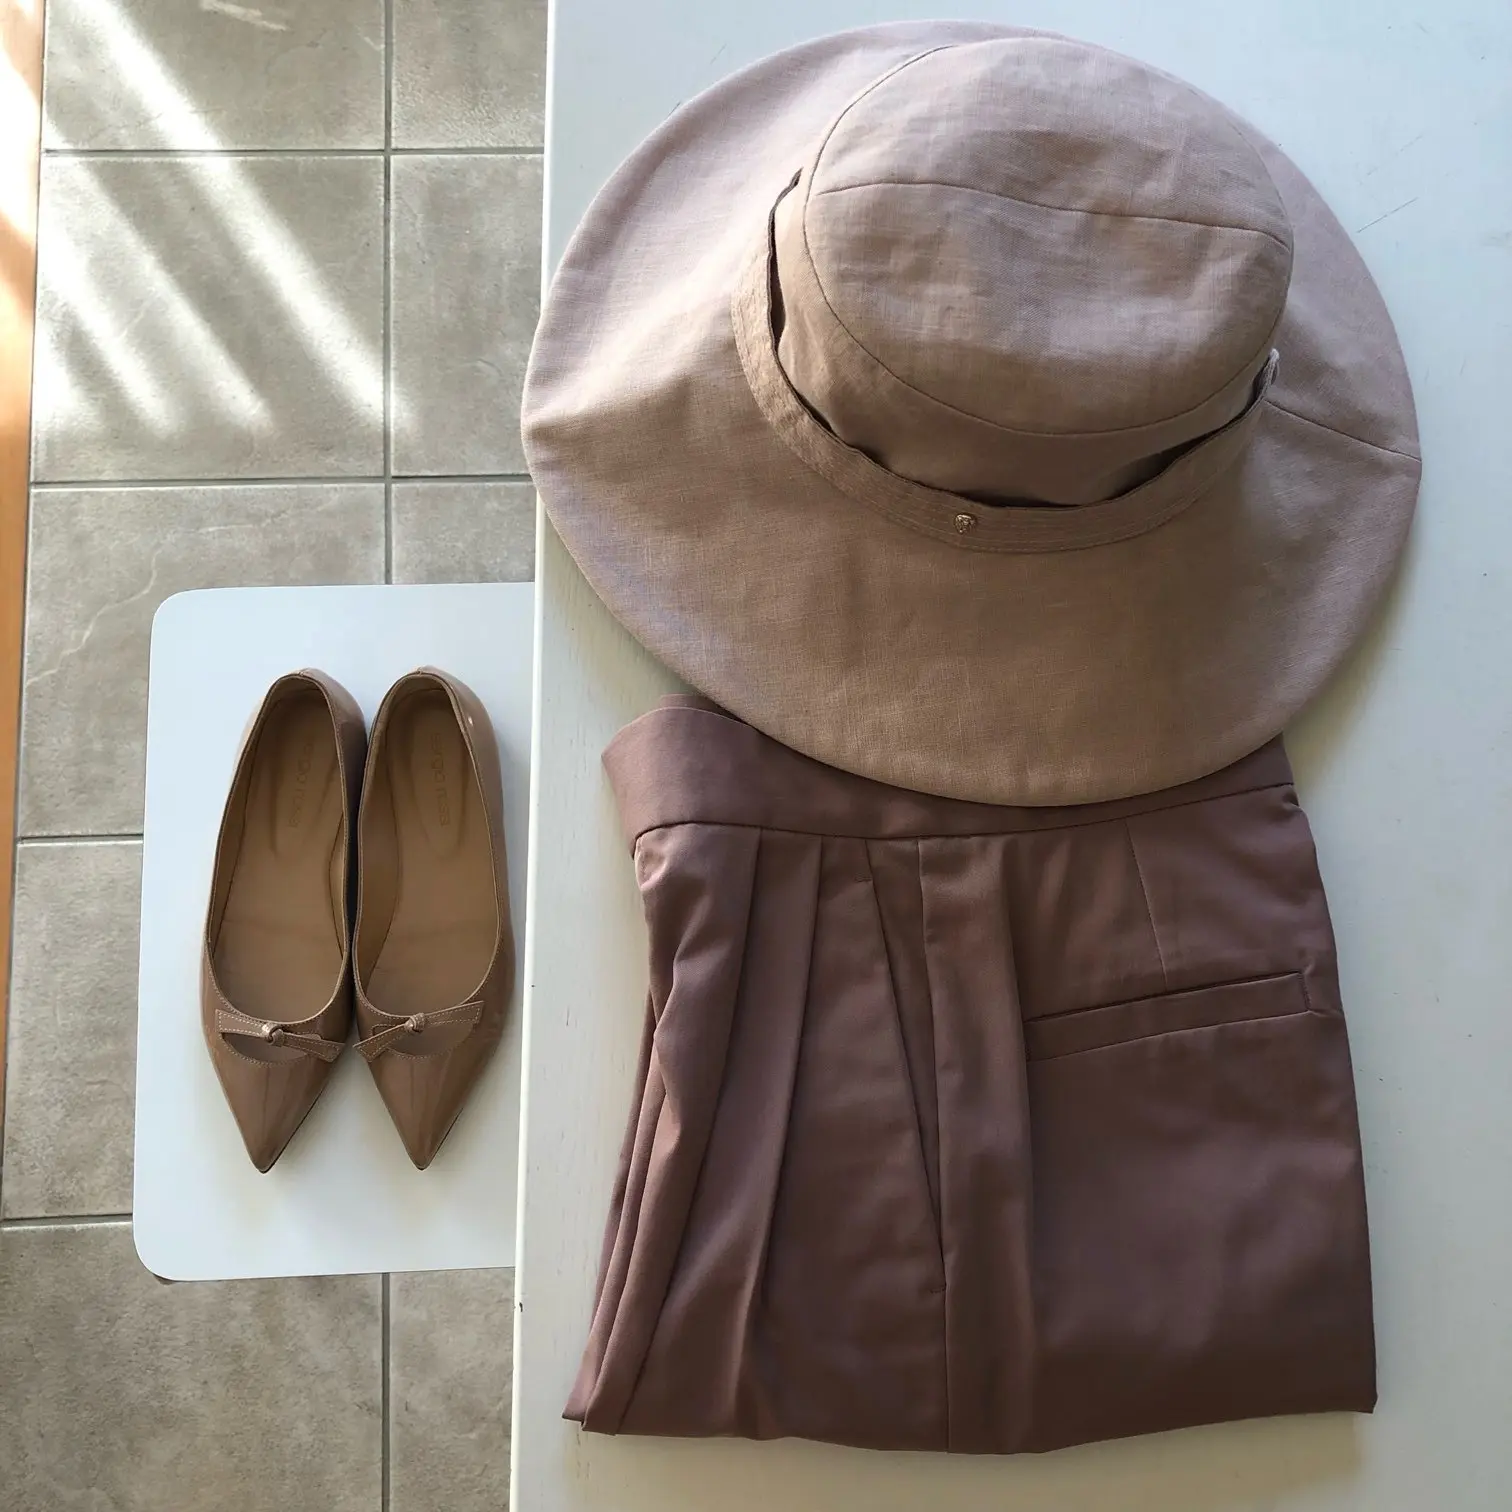 ピンク系の帽子、パンツ、靴